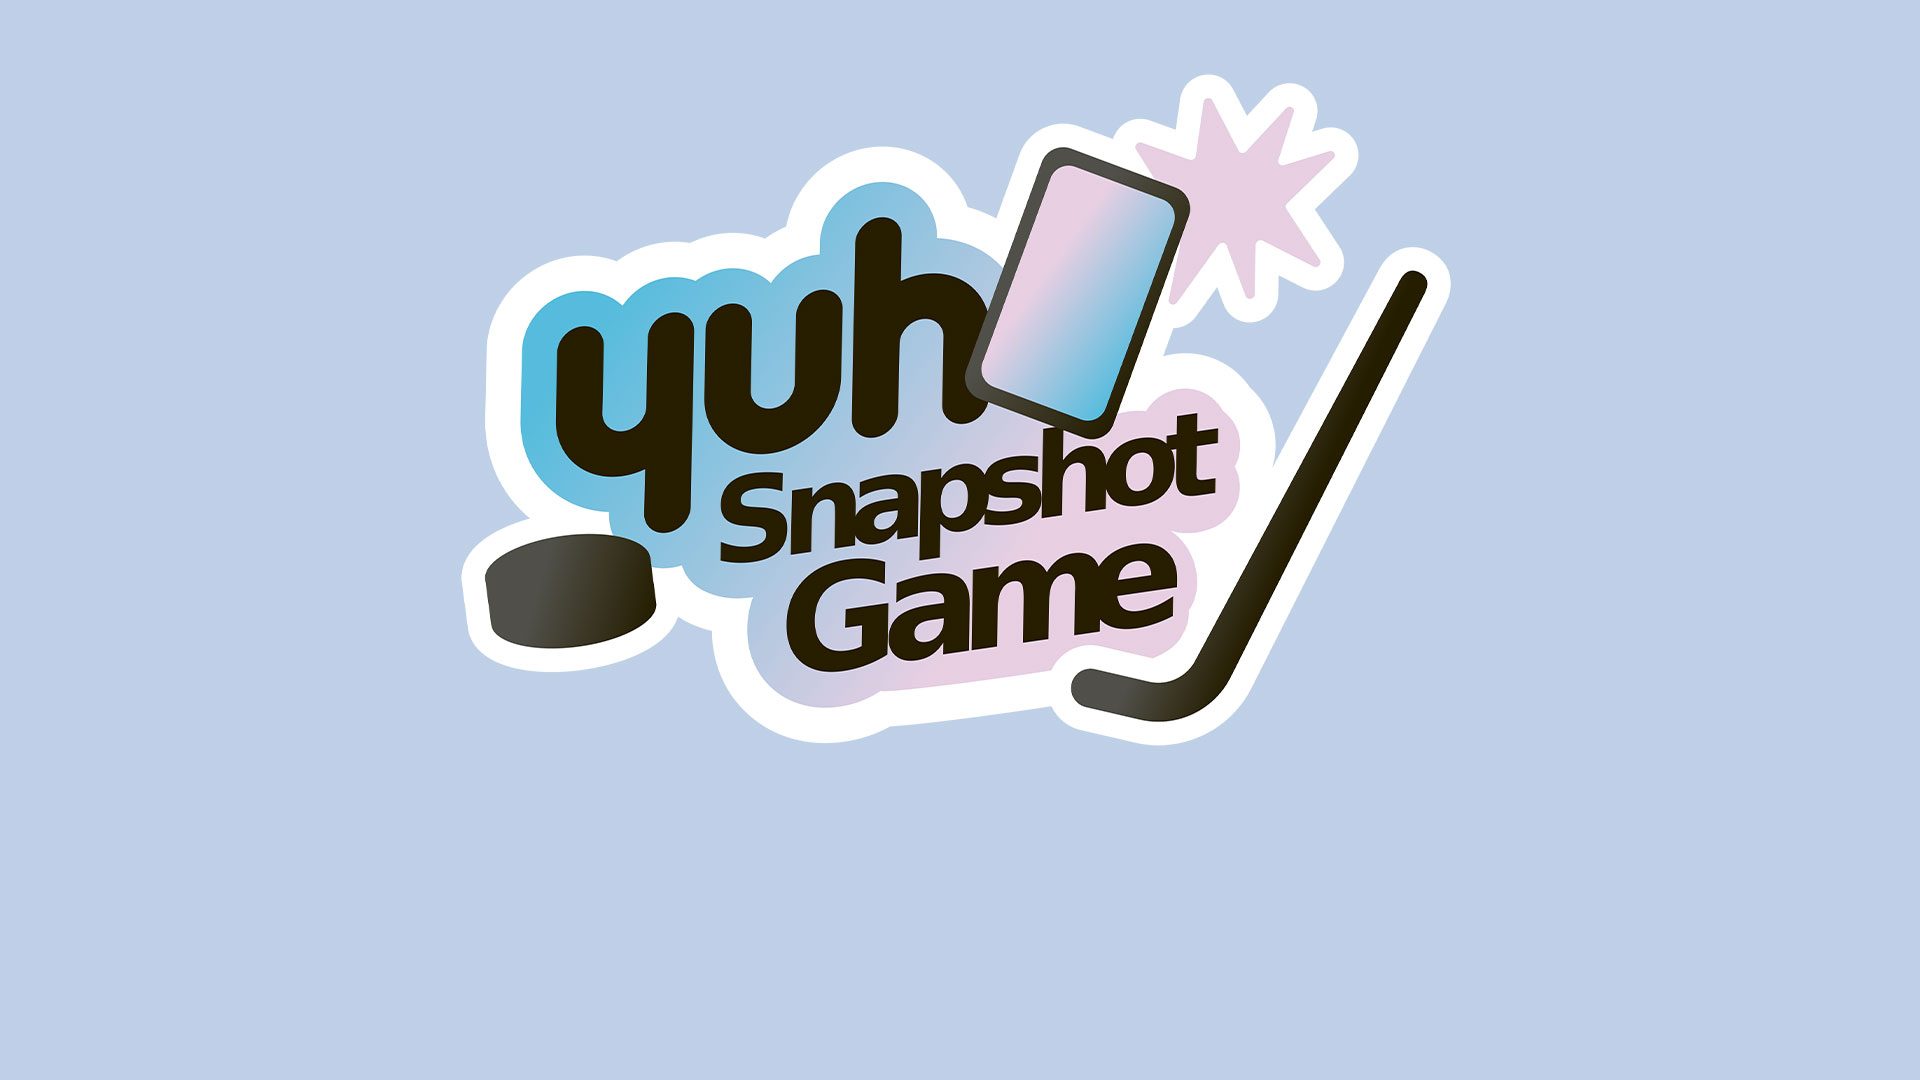 Snapshot Games